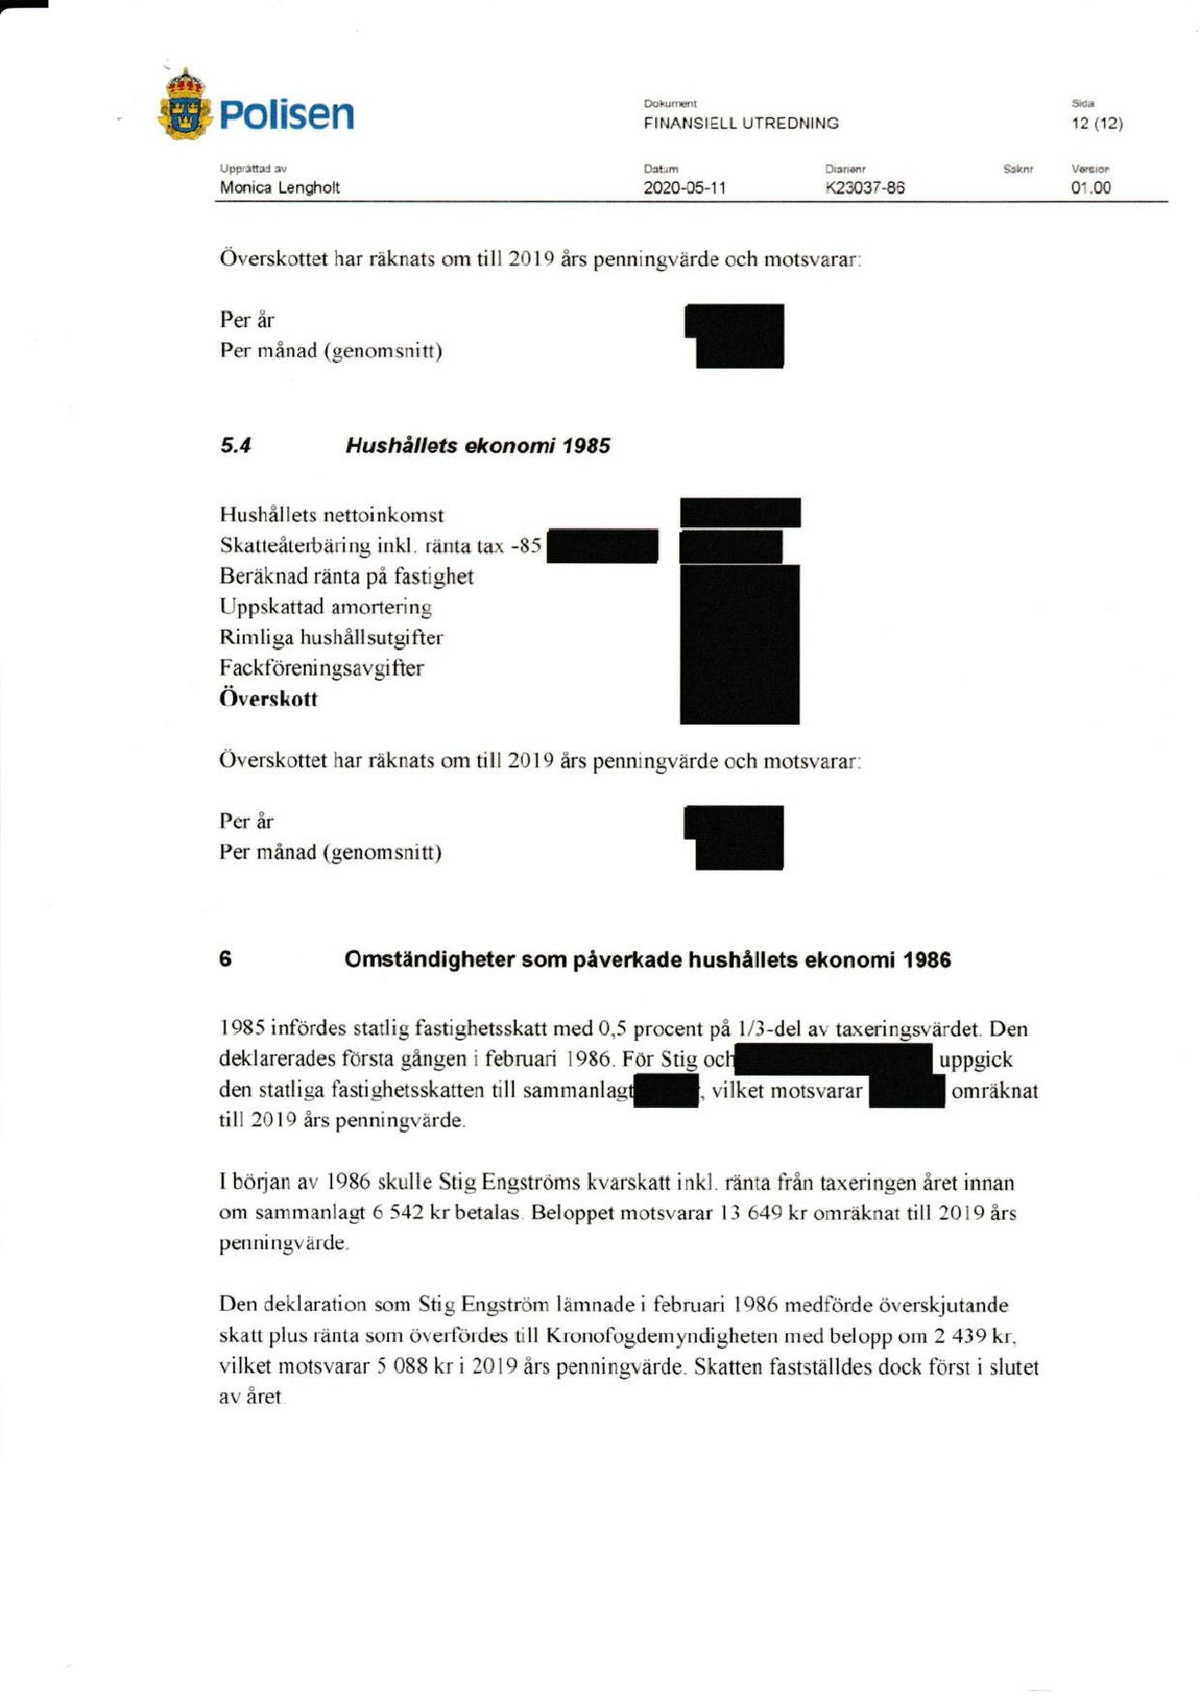 Pol-2020-05-11 E63-54 finansiell-utredning-engström.pdf